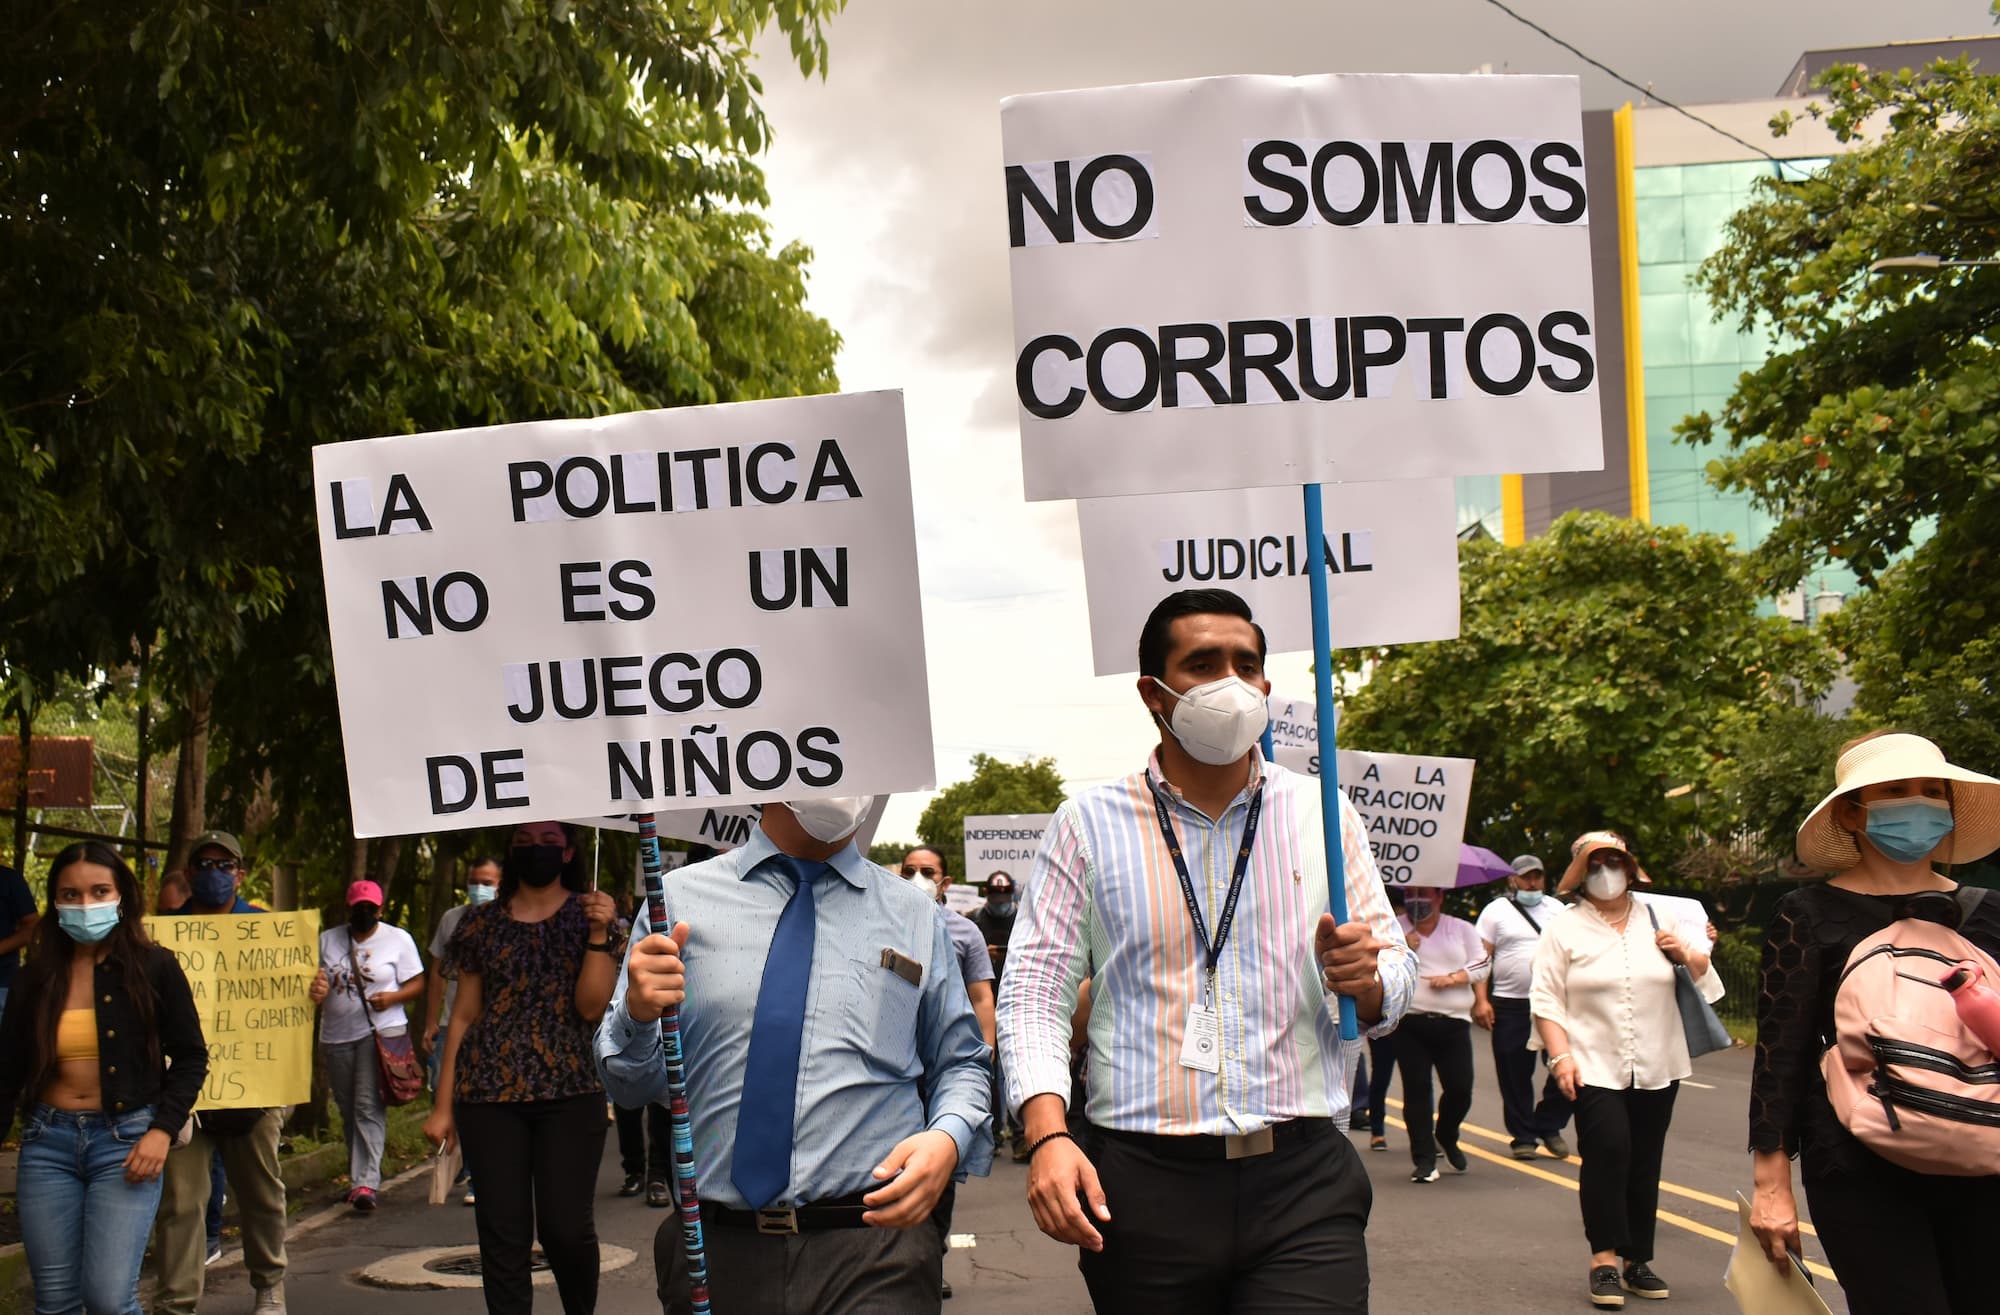 Jueces y empleados del Órgano Judicial marcharon el 7 de septiembre de 2021 para protestar por los despidos masivos en los tribunales. La marcha coincidió con las protestas por el bitcóin. Foto Factum/Natalia Alberto.